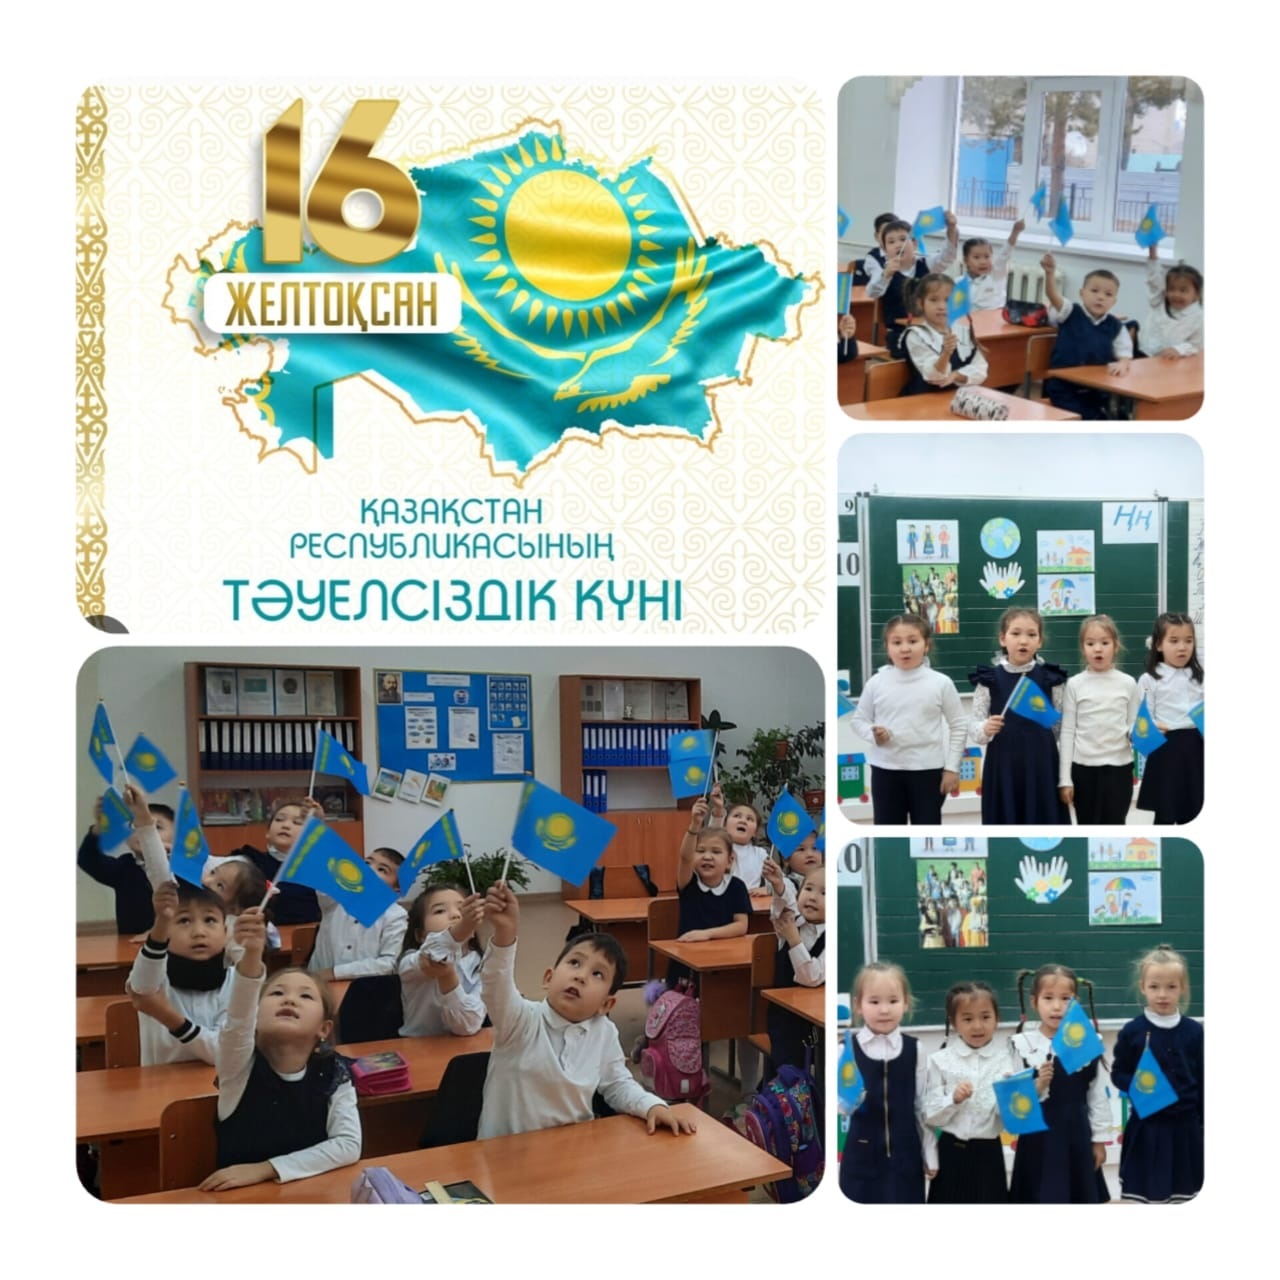 ко Дню Независимости Республики Казахстан